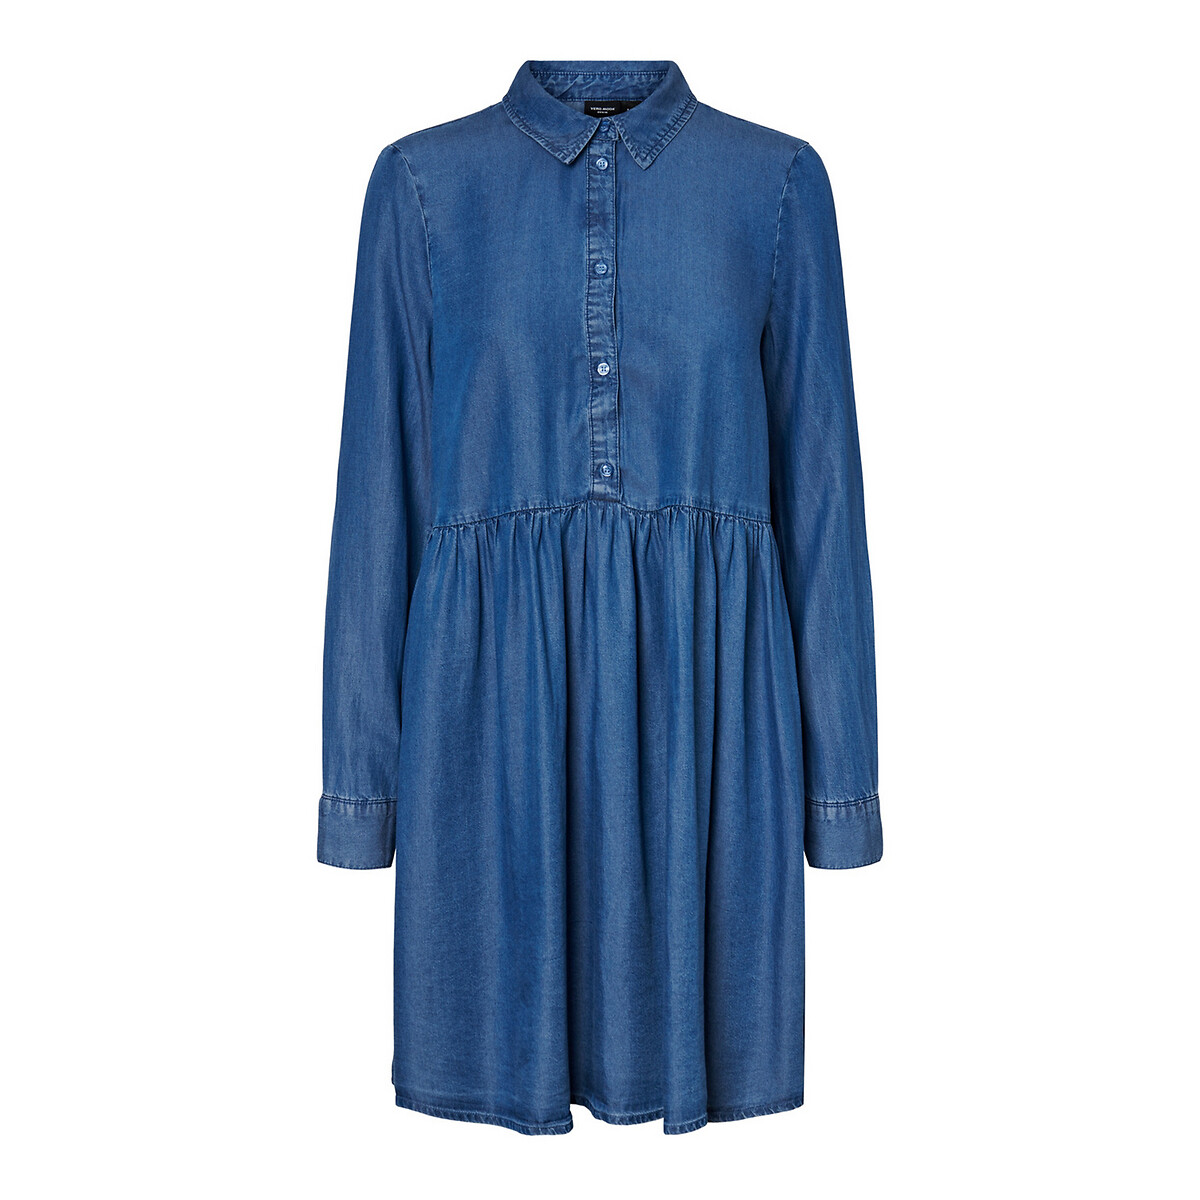 Платье-рубашка La Redoute лиоцелла S синий, размер S - фото 5